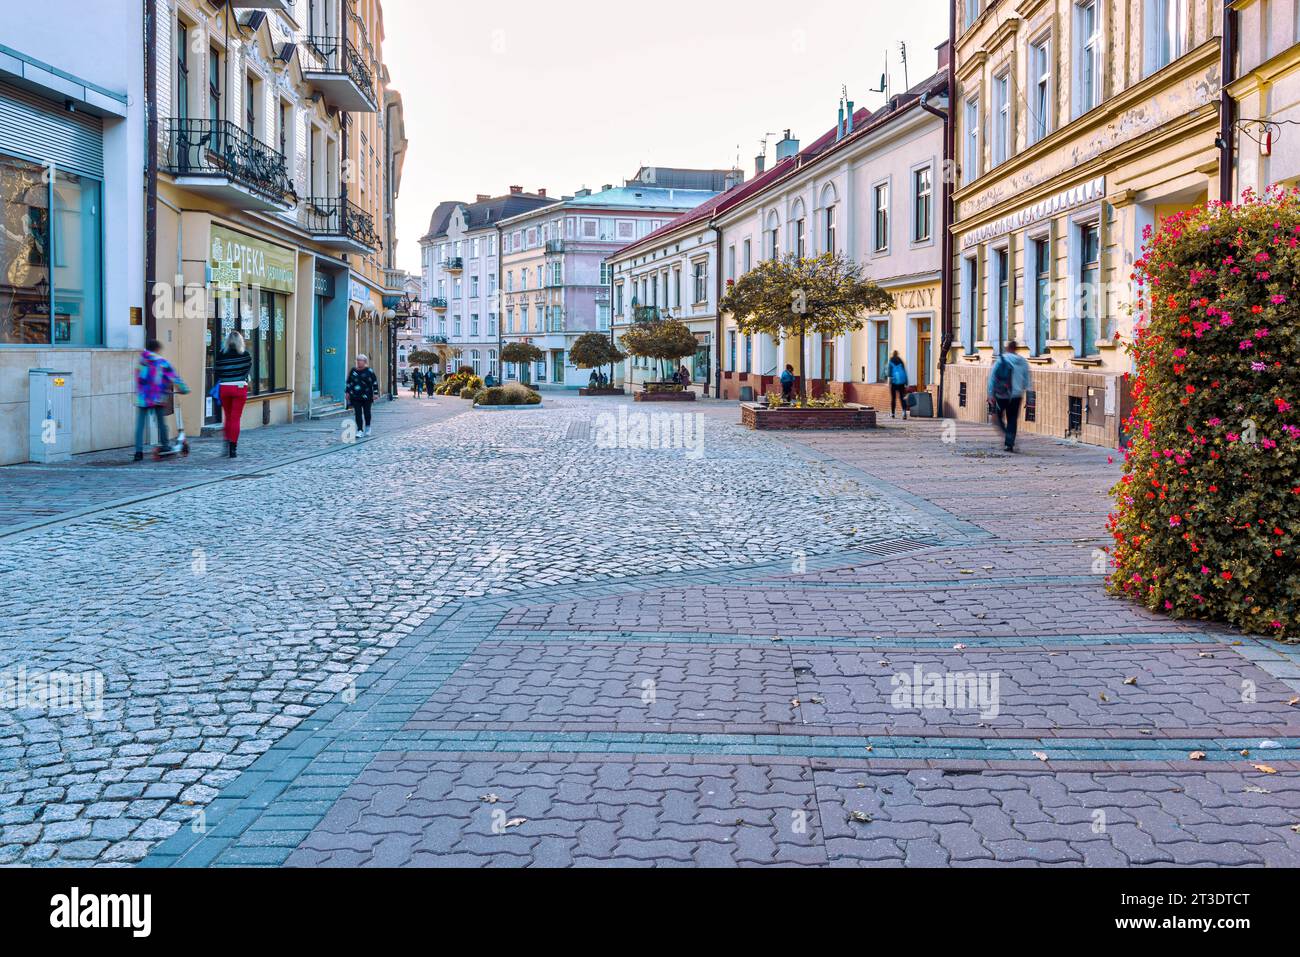 La città di Tarnow non è solo la bellezza unica della città vecchia, che ha conservato le strade medievali, i capolavori architettonici del gotico, della Polonia. Foto Stock